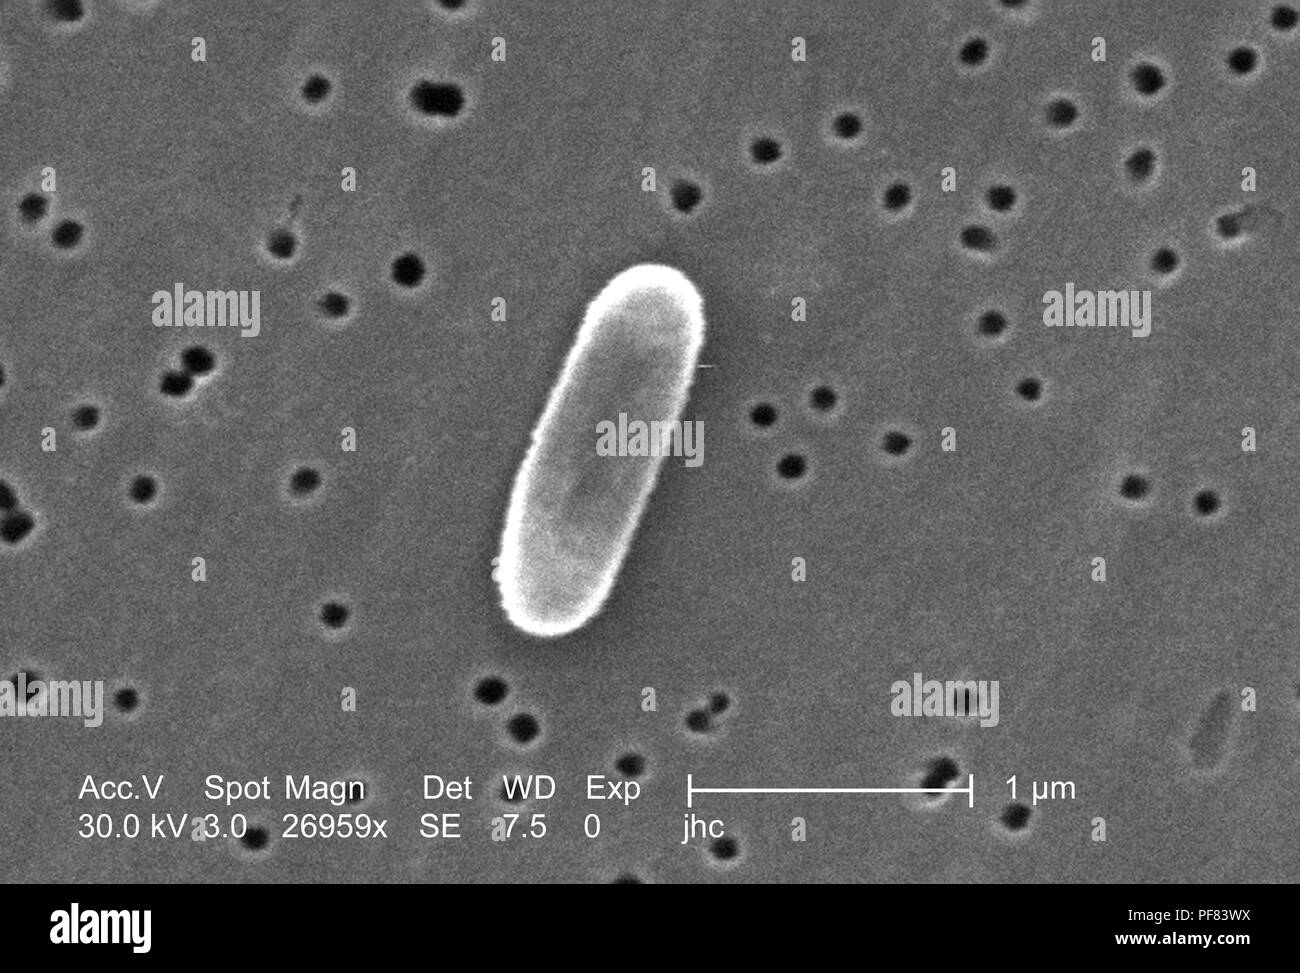 Fortemente ingrandita di un Ralstonia mannitolilytica batterio ha rivelato nel 26959x scansione ingrandita al microscopio elettronico (SEM) immagine, 2006. Immagine cortesia di centri per il controllo delle malattie (CDC) / Judith Noble-Wang, Ph.D. () Foto Stock